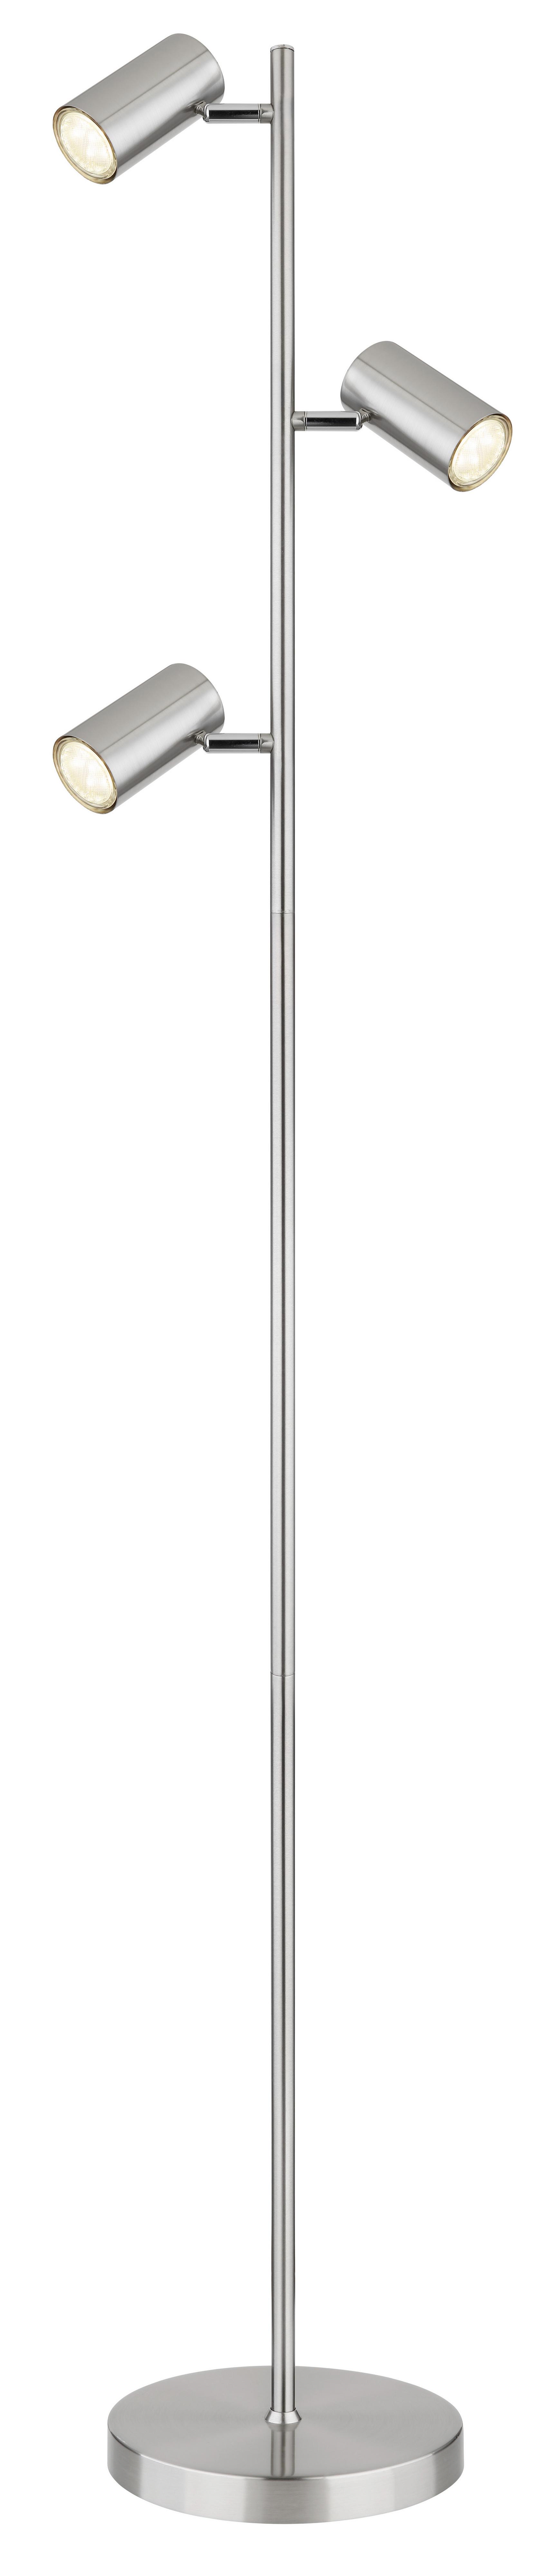 Stehleuchte Robby max. 5 Watt - Nickelfarben, Design, Metall (25/23/154cm) - Globo